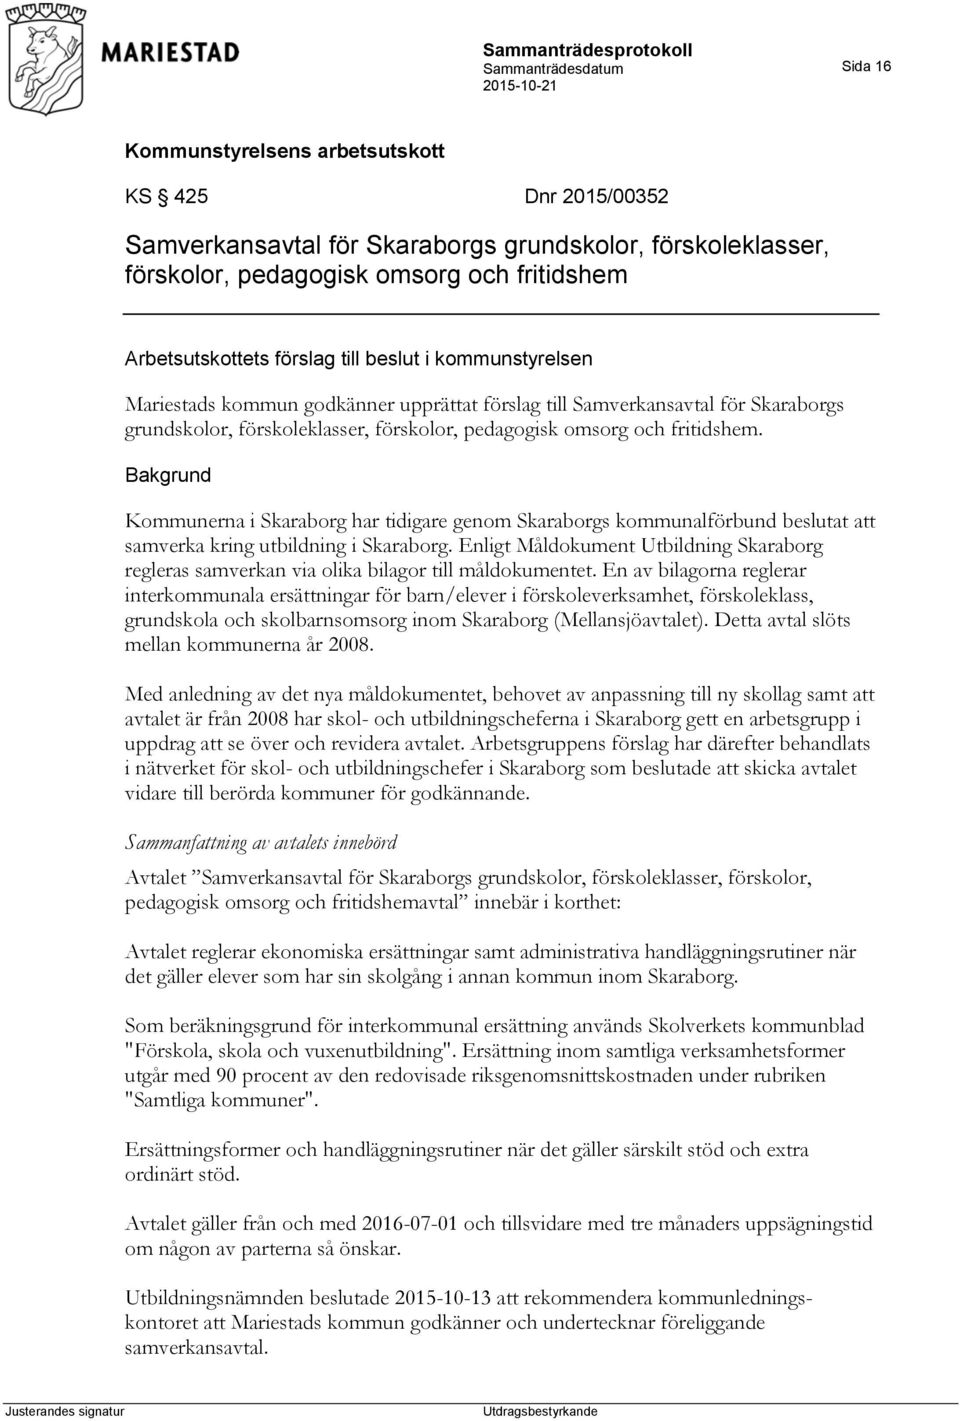 Kommunerna i Skaraborg har tidigare genom Skaraborgs kommunalförbund beslutat att samverka kring utbildning i Skaraborg.